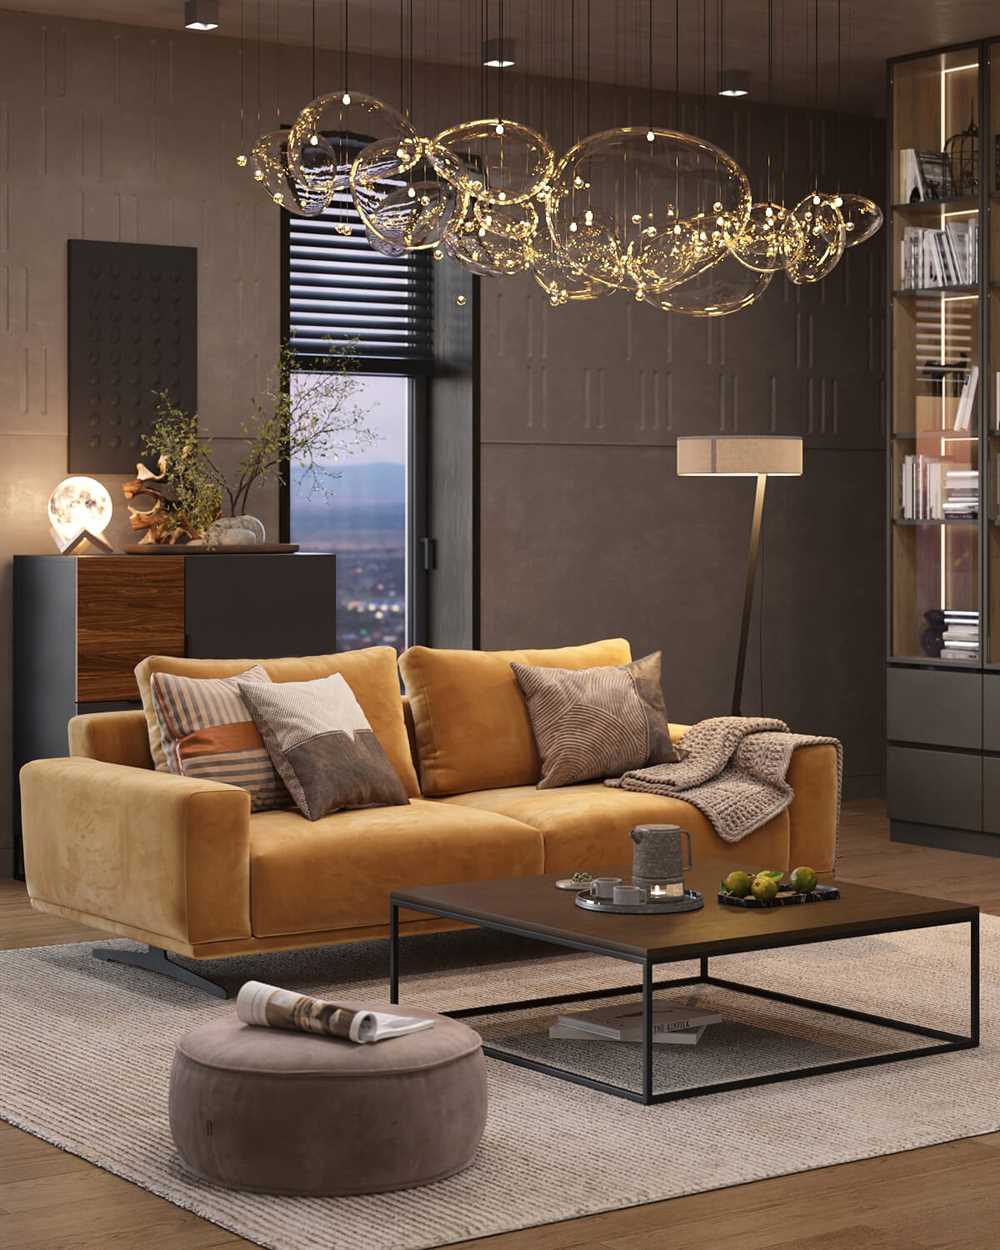 Другим очень важным аспектом является стильность дивана, который должен сочетаться с остальной мебелью и интерьером гостиной. Стильный диван может быть как центральным акцентом, так и гармоничным дополнением к общей концепции помещения. Он может придавать комнате особый шарм и выделяться на фоне остальной мебели.